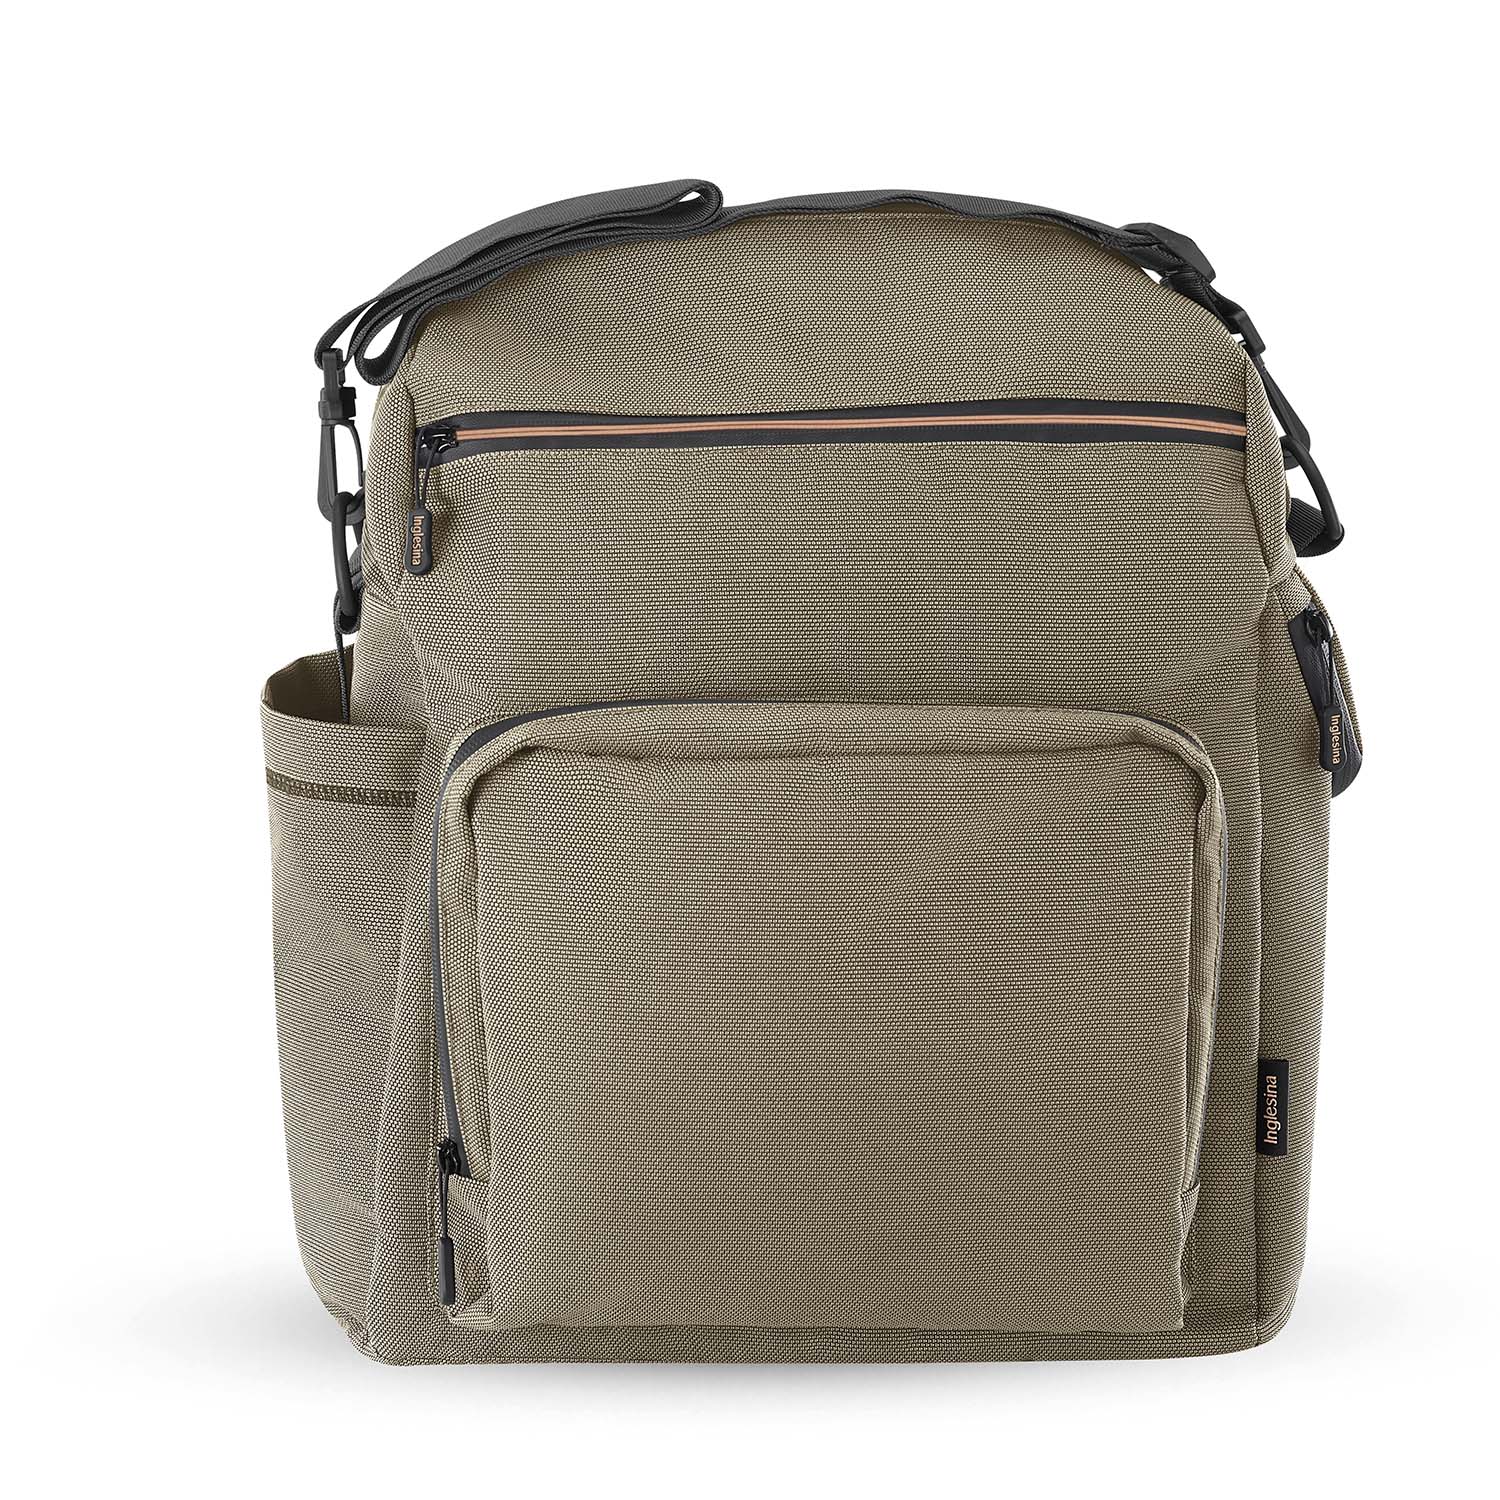 Сумка-рюкзак для коляски Inglesina Aptica XT New Adventure Bag Tuareg Beige